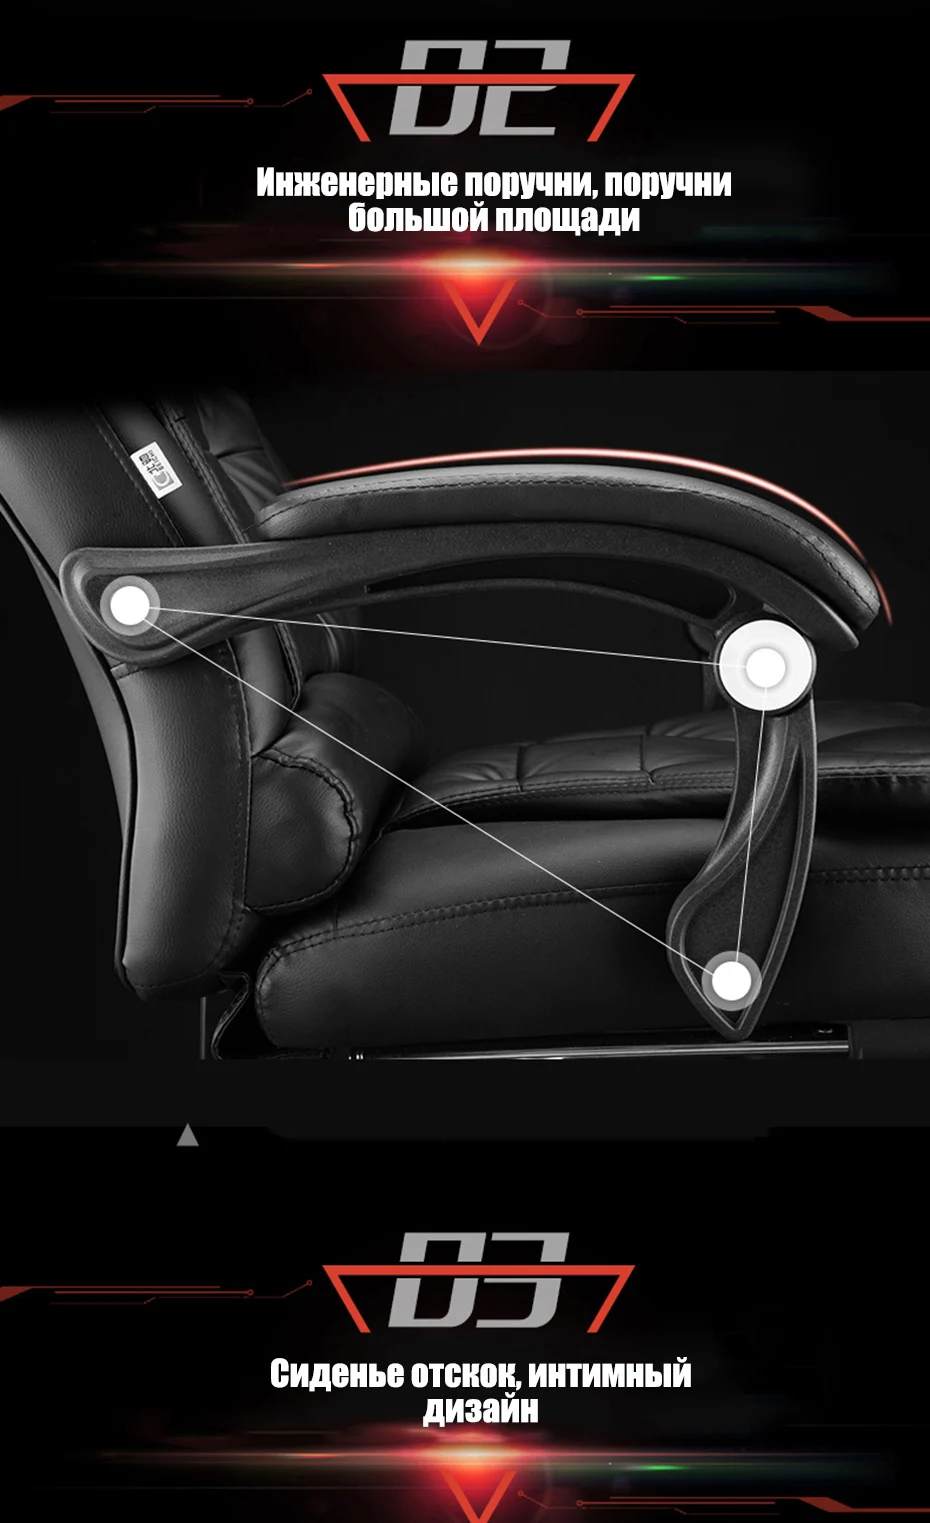 Высокое качество H808-5 Boss Poltrona Esports офисное кресло эргономичное Синтетическая кожа может лежать массаж офисная мебель